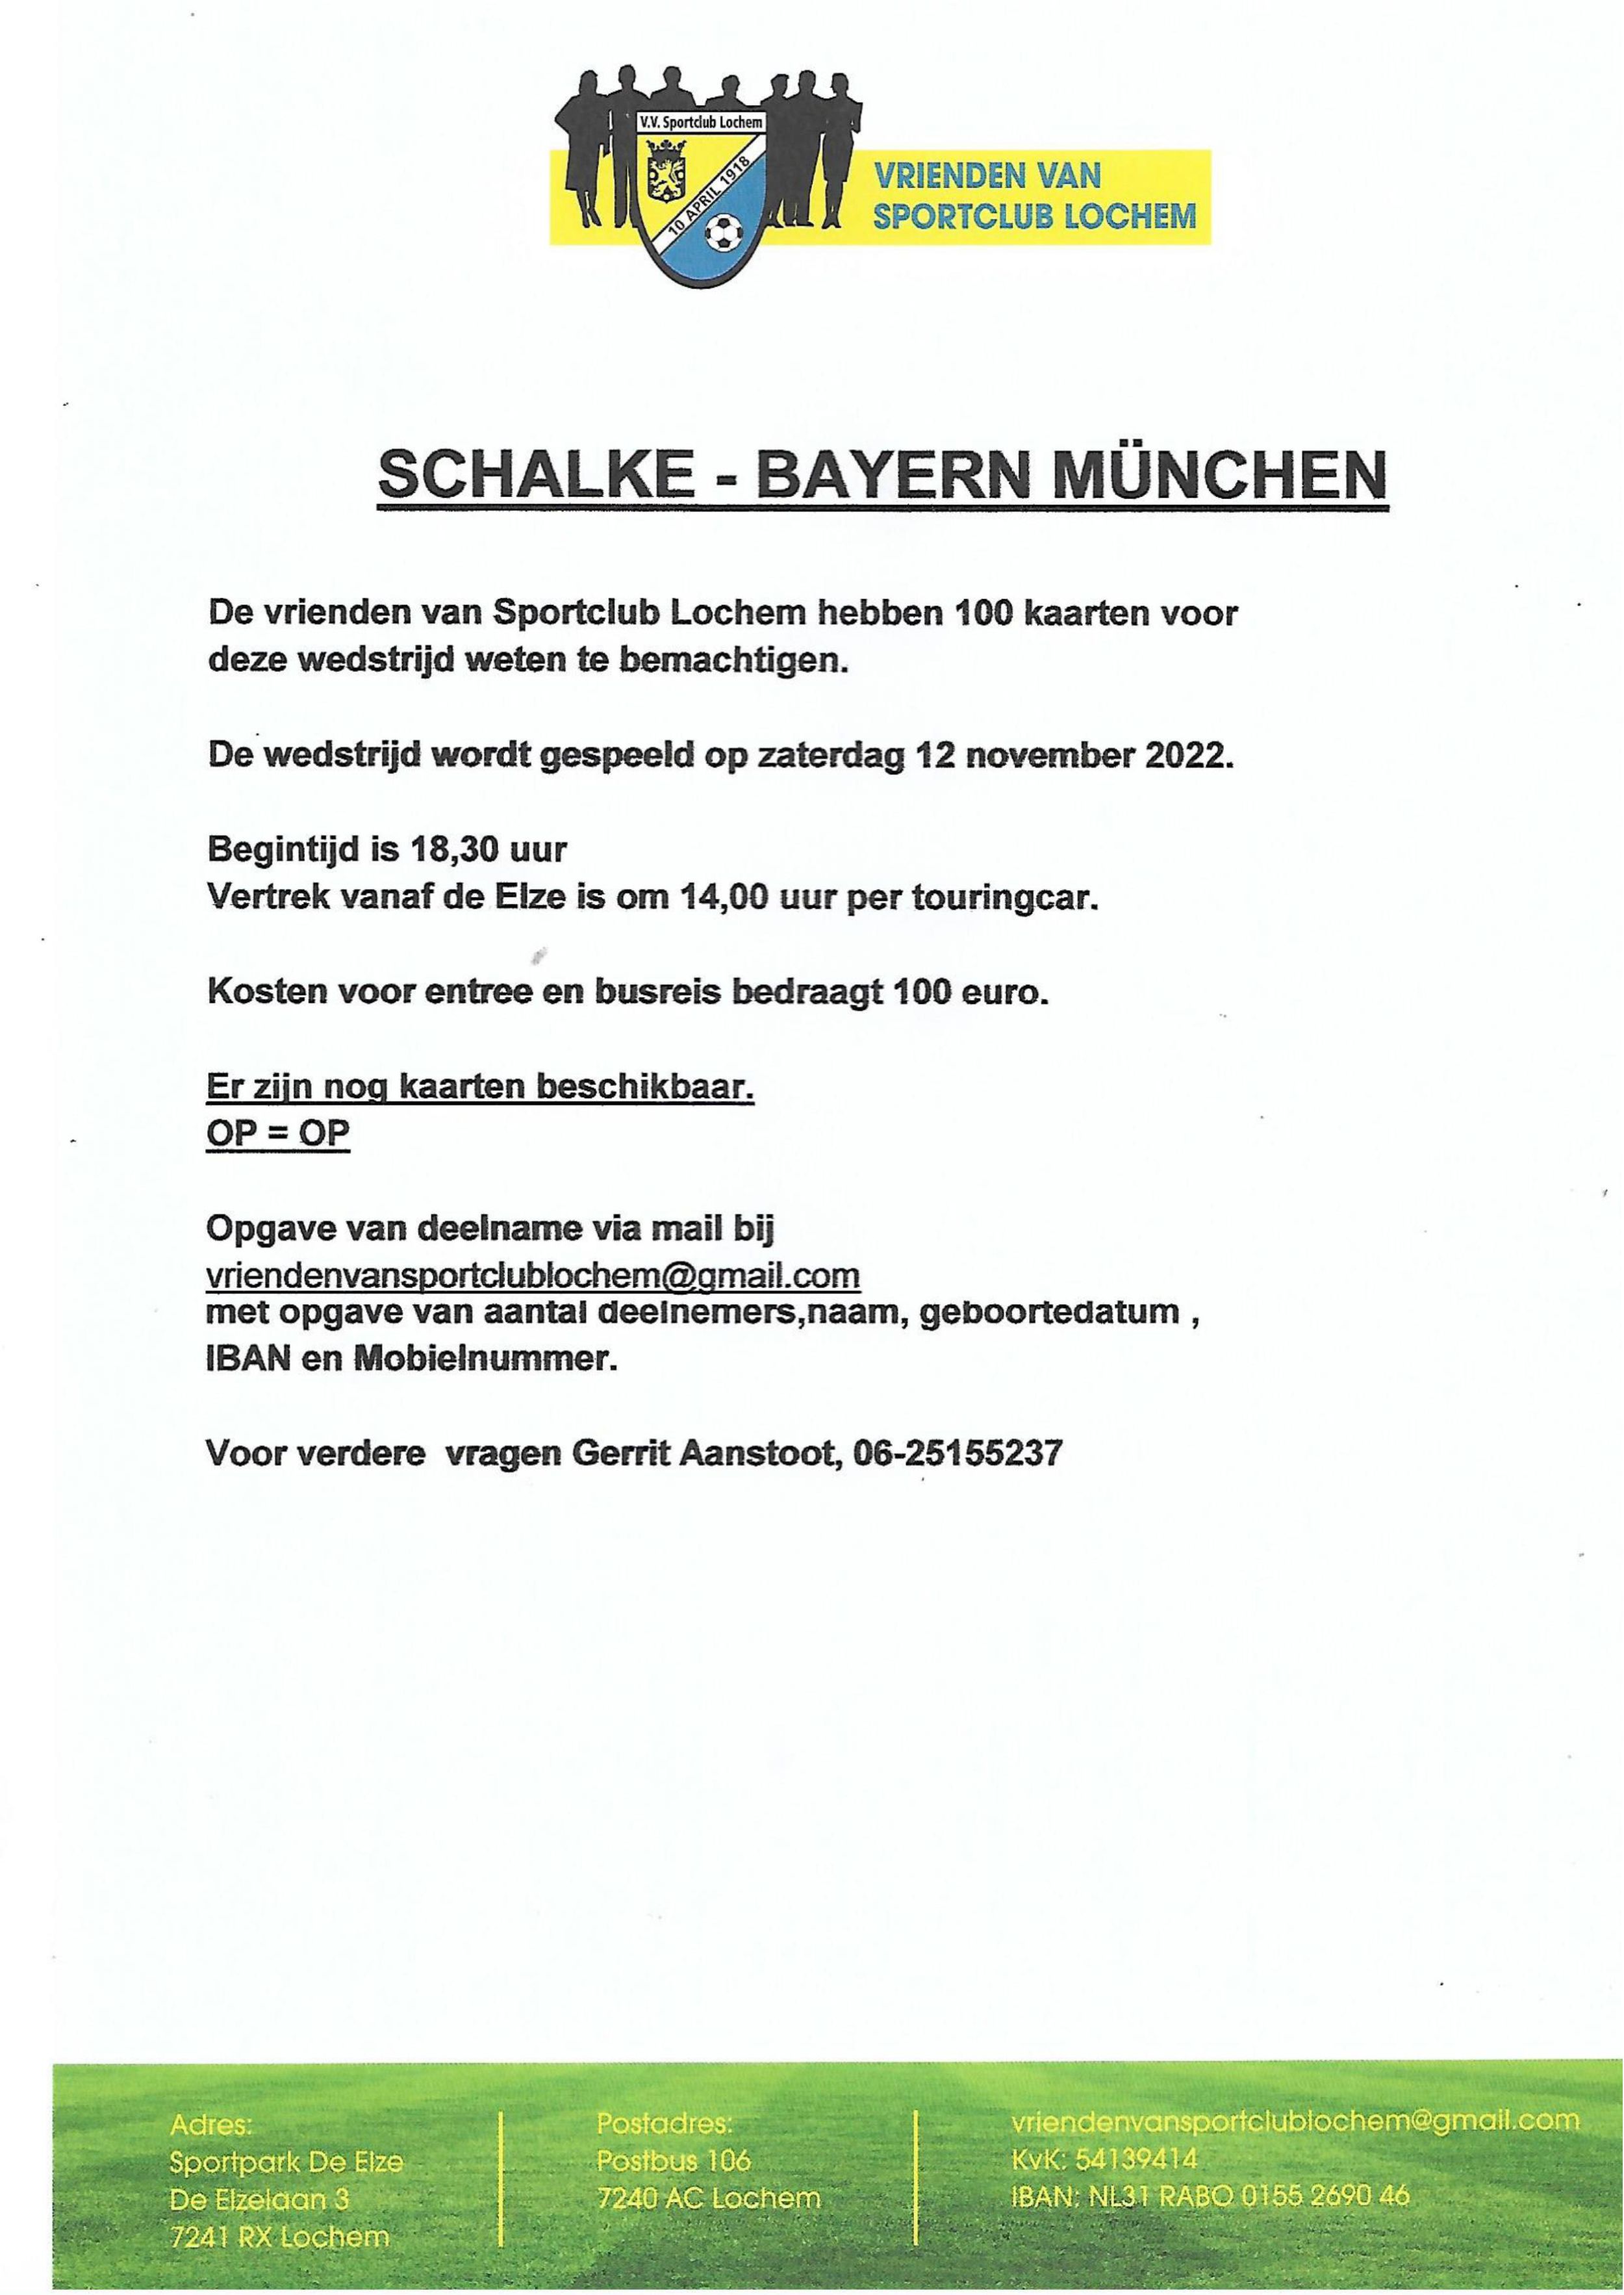 Schalke - Bayern München